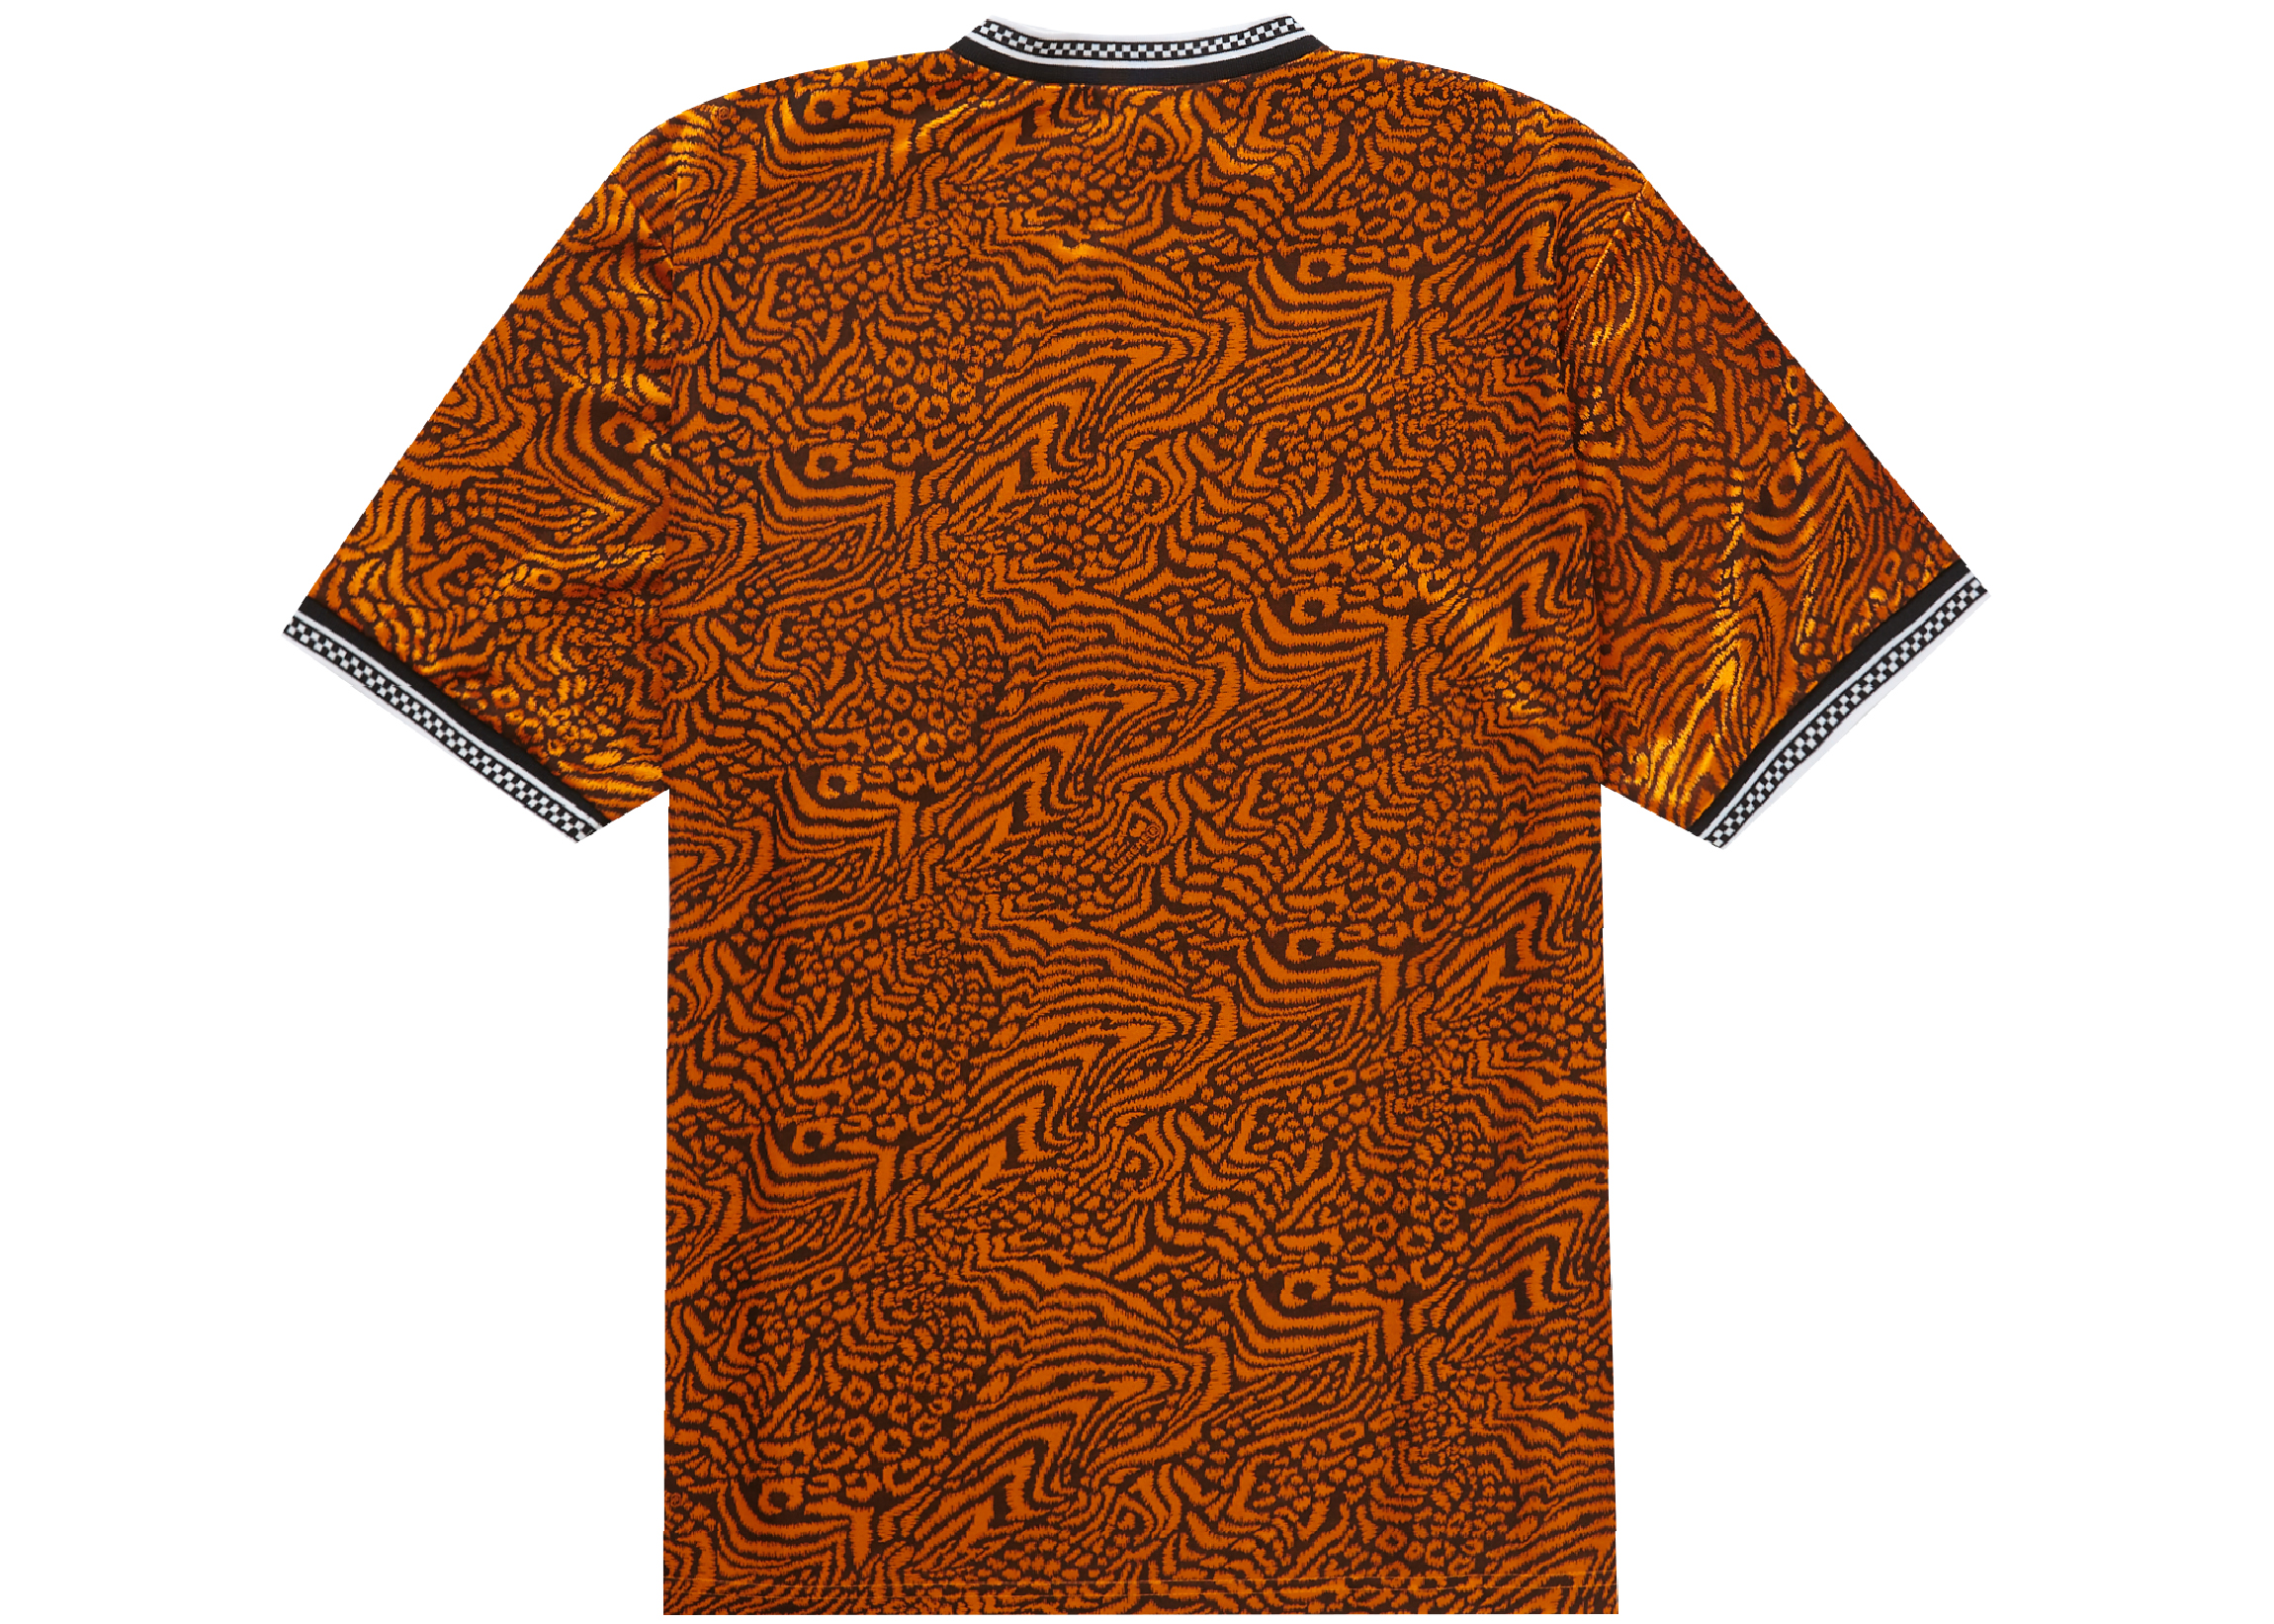 Supreme Umbro Jacquard Animal Print Soccer Jersey Orange Men's 